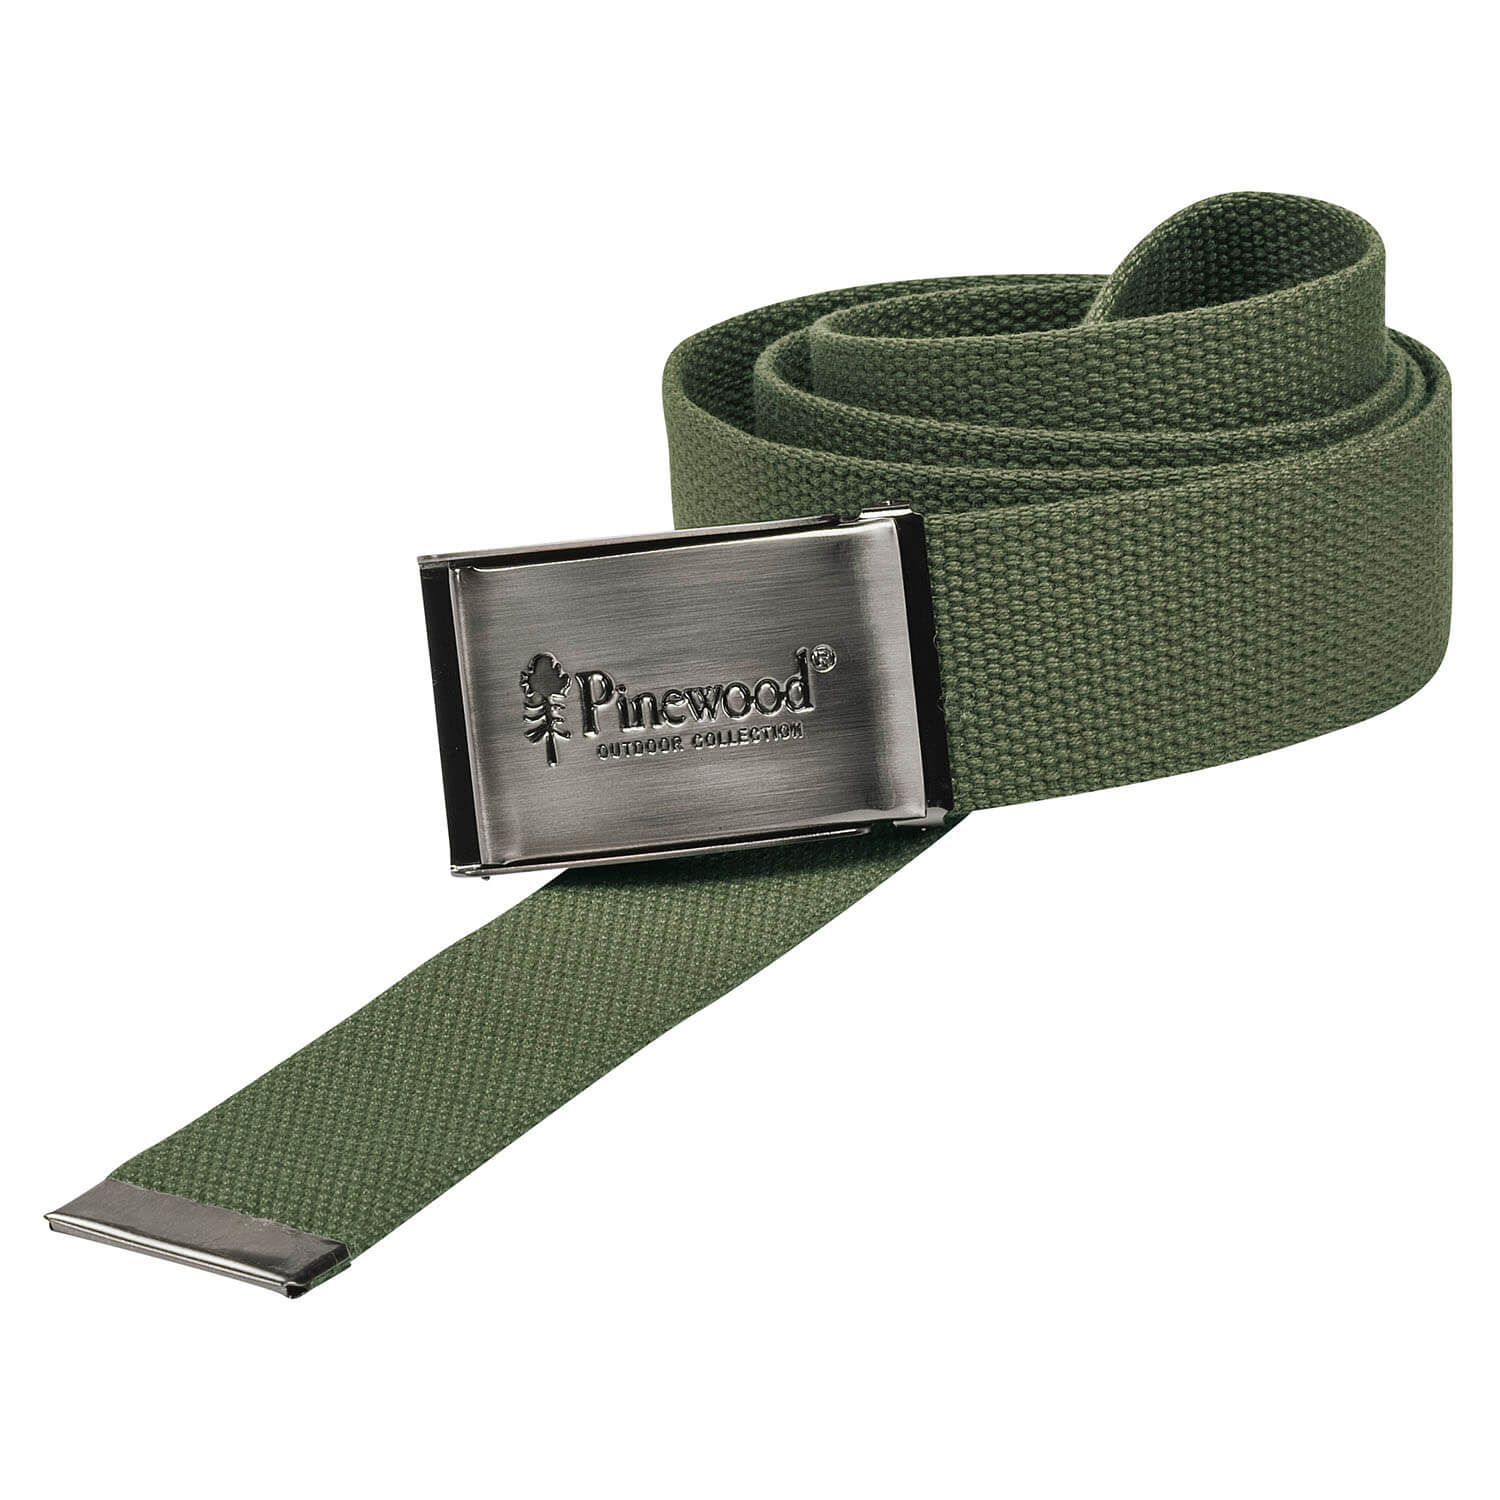 Pinewod Belt Canvas (green) - Belts & Suspenders